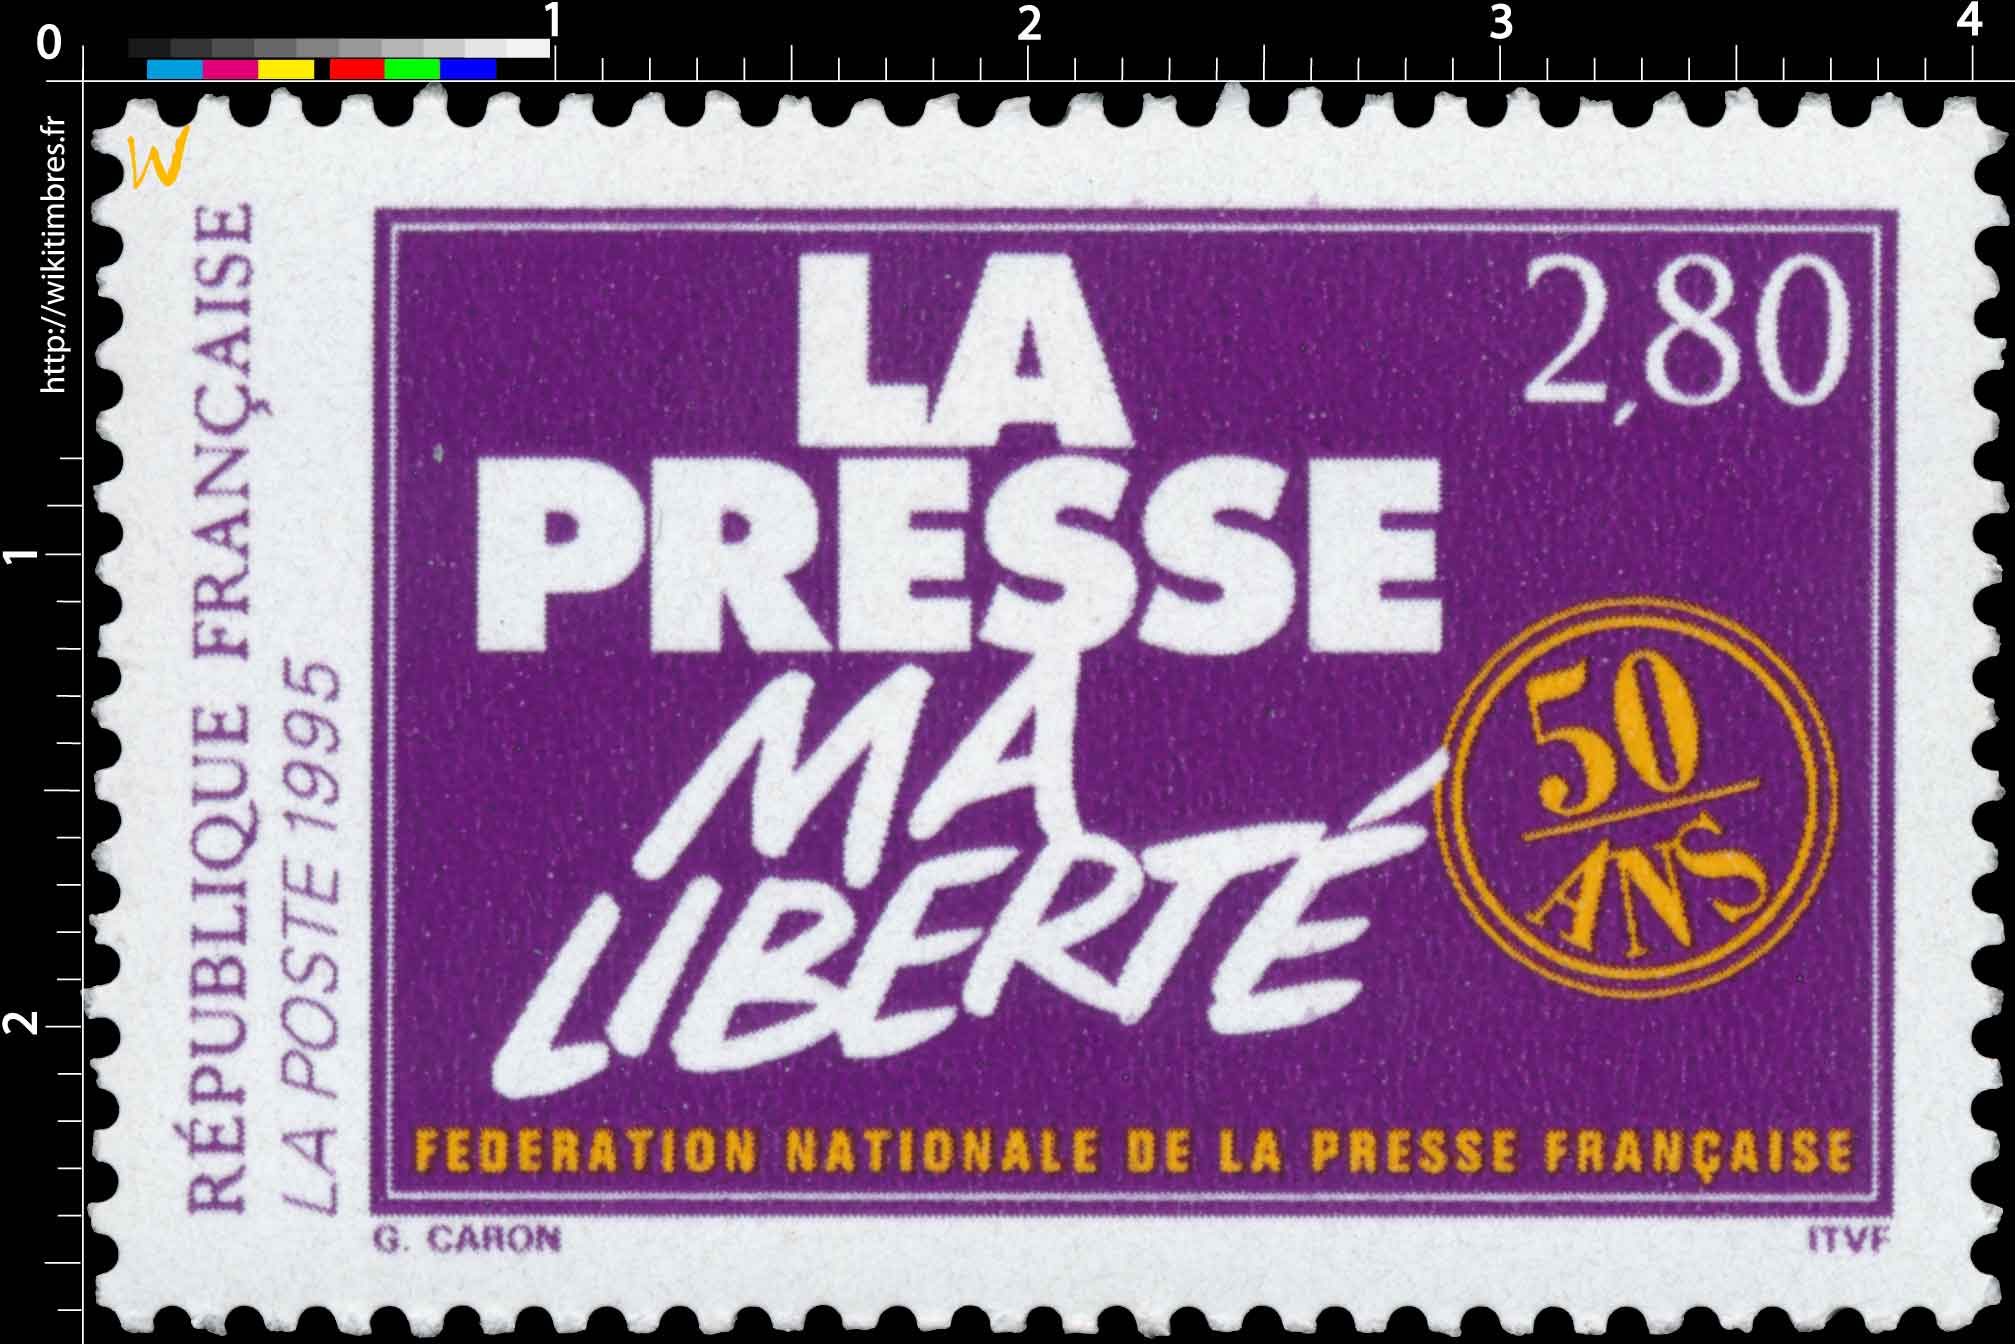 1995 LA PRESSE MA LIBERTÉ 50 ANS FÉDÉRATION NATIONALE DE LA PRESSE FRANÇAISE